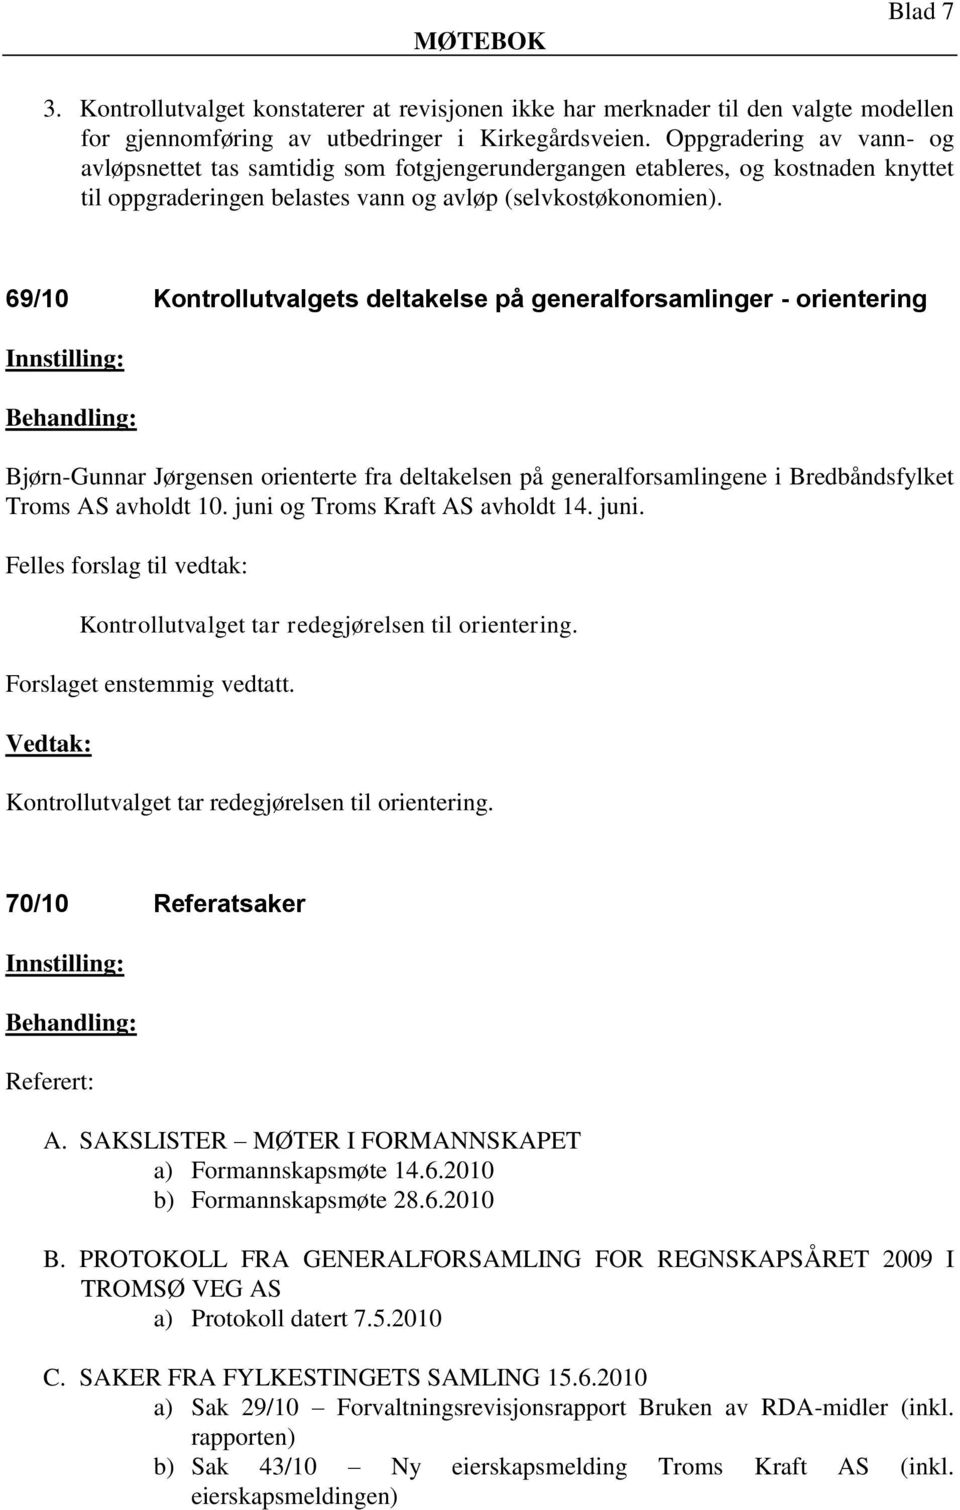 69/10 Kontrollutvalgets deltakelse på generalforsamlinger - orientering Bjørn-Gunnar Jørgensen orienterte fra deltakelsen på generalforsamlingene i Bredbåndsfylket Troms AS avholdt 10.